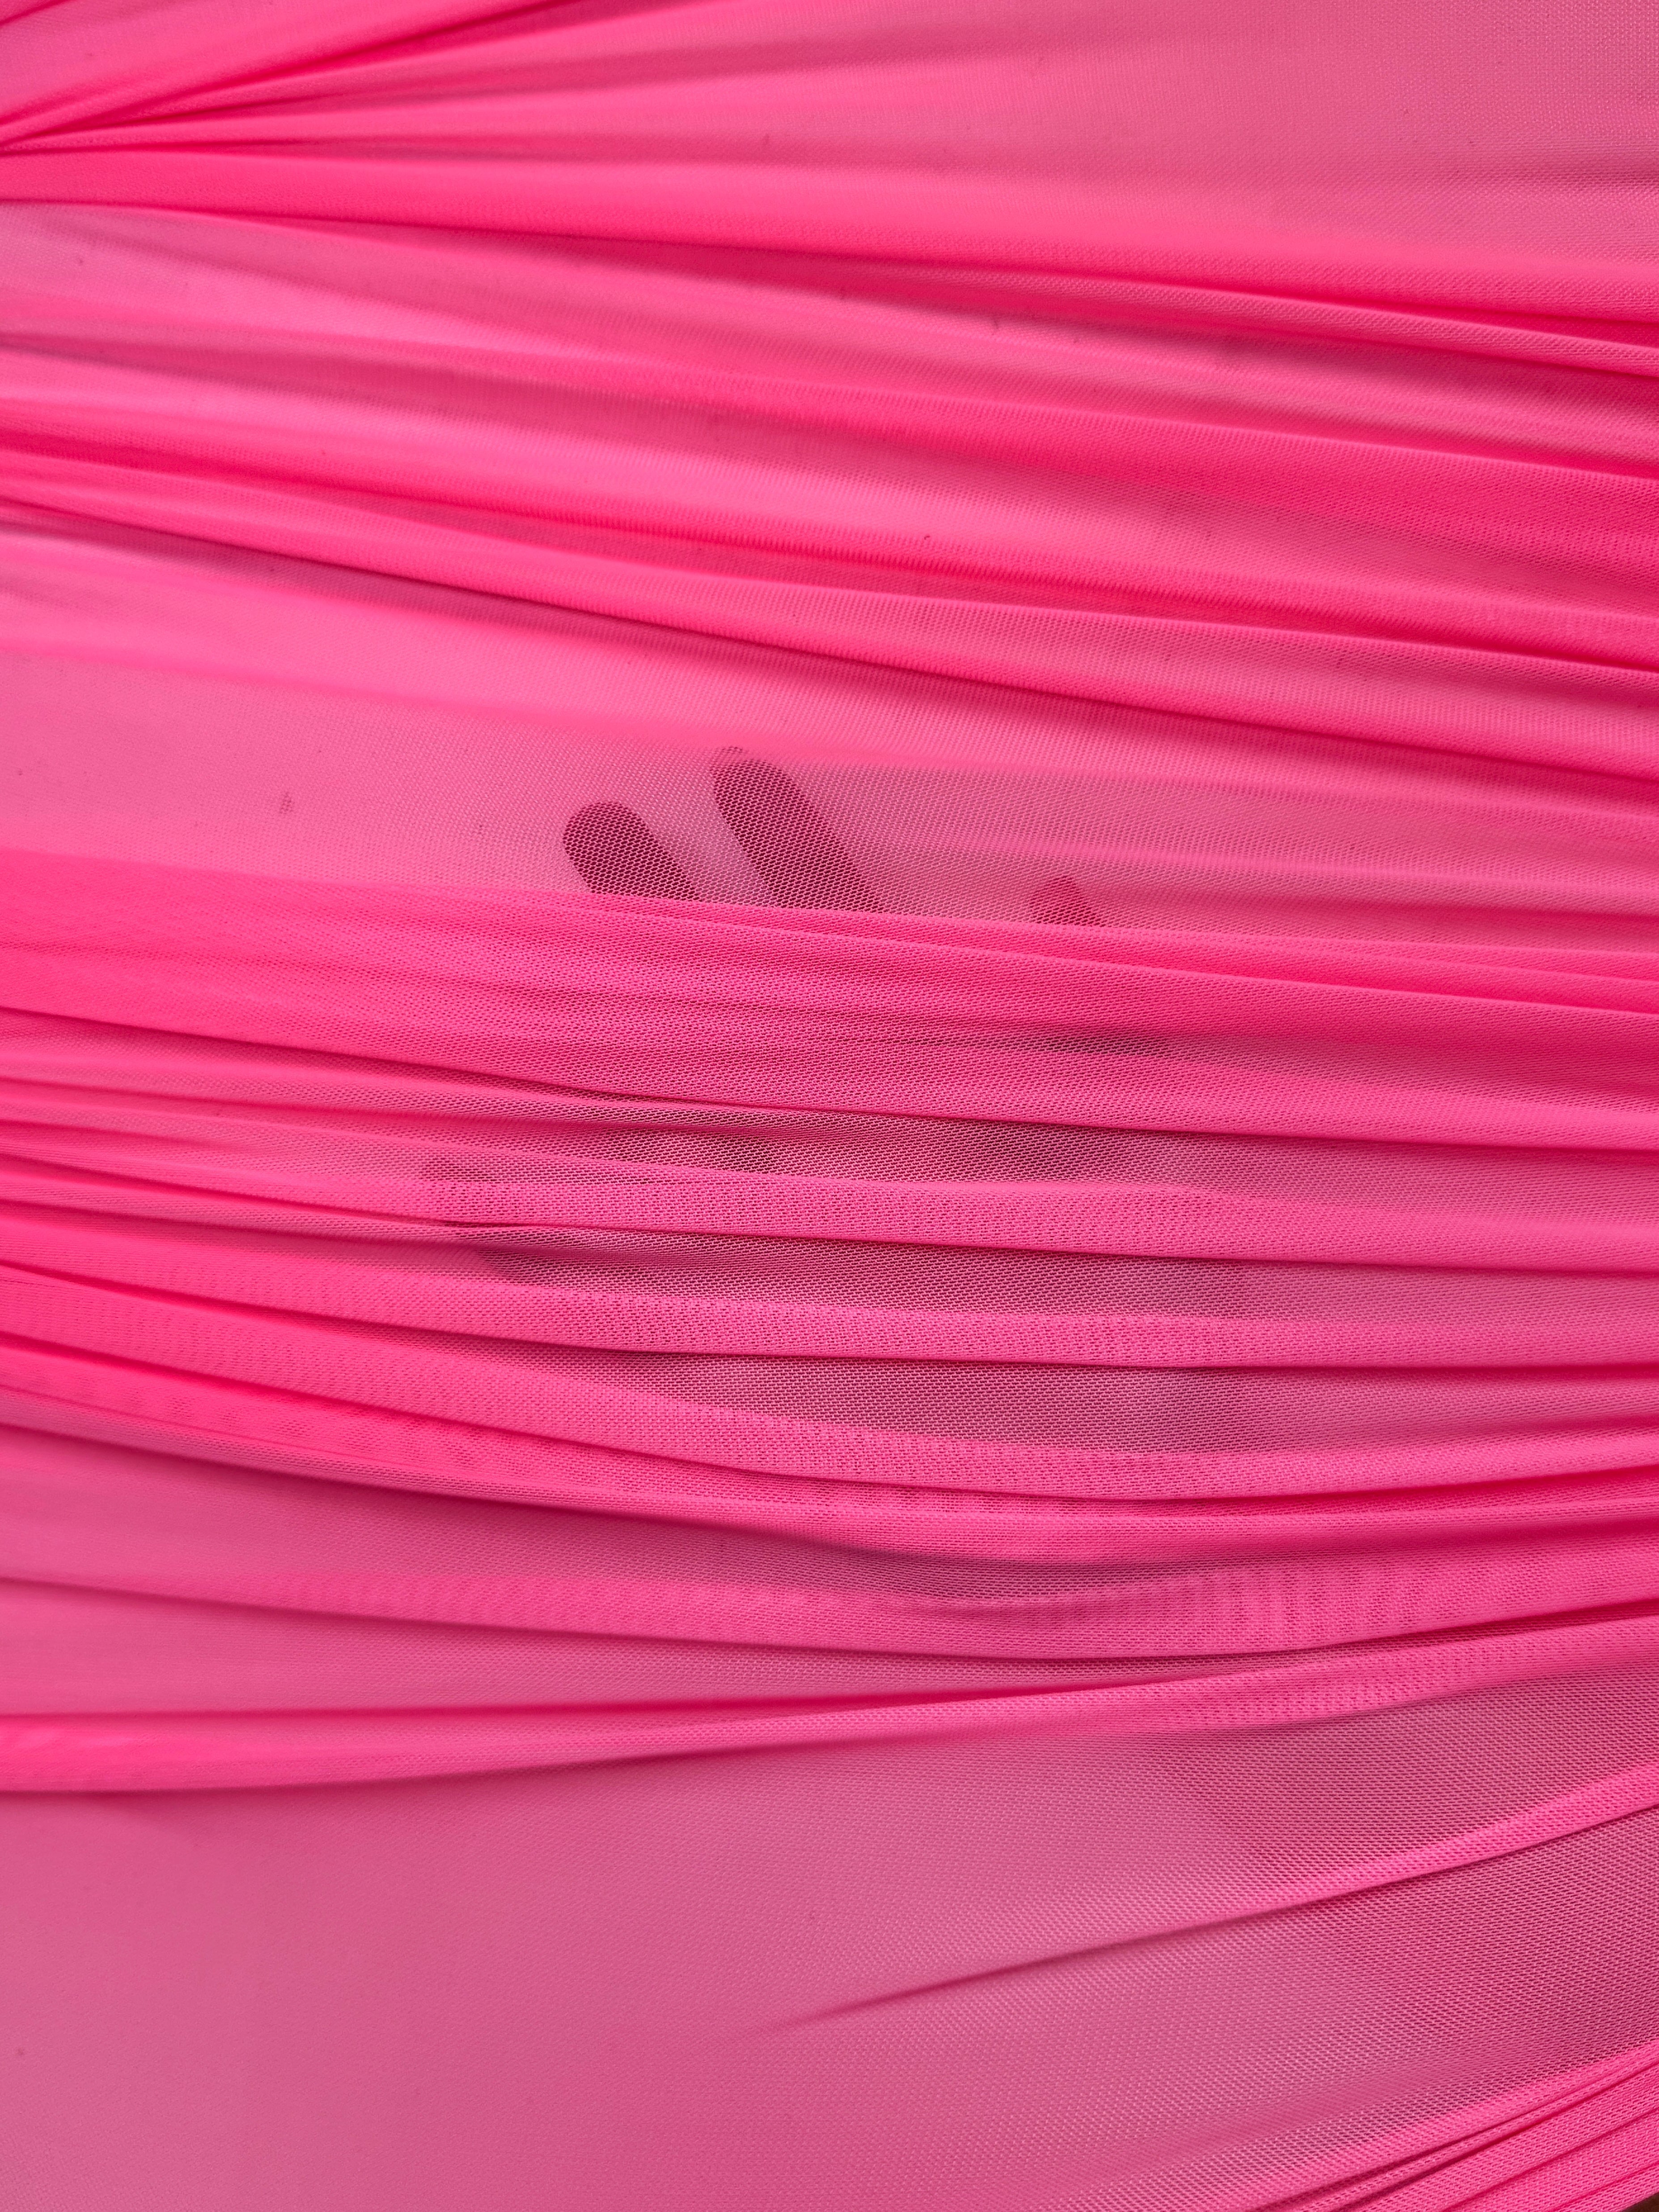 neon pink 4way stretch power mesh, dark pink power mesh,light pink power mesh, fuchsia power mesh